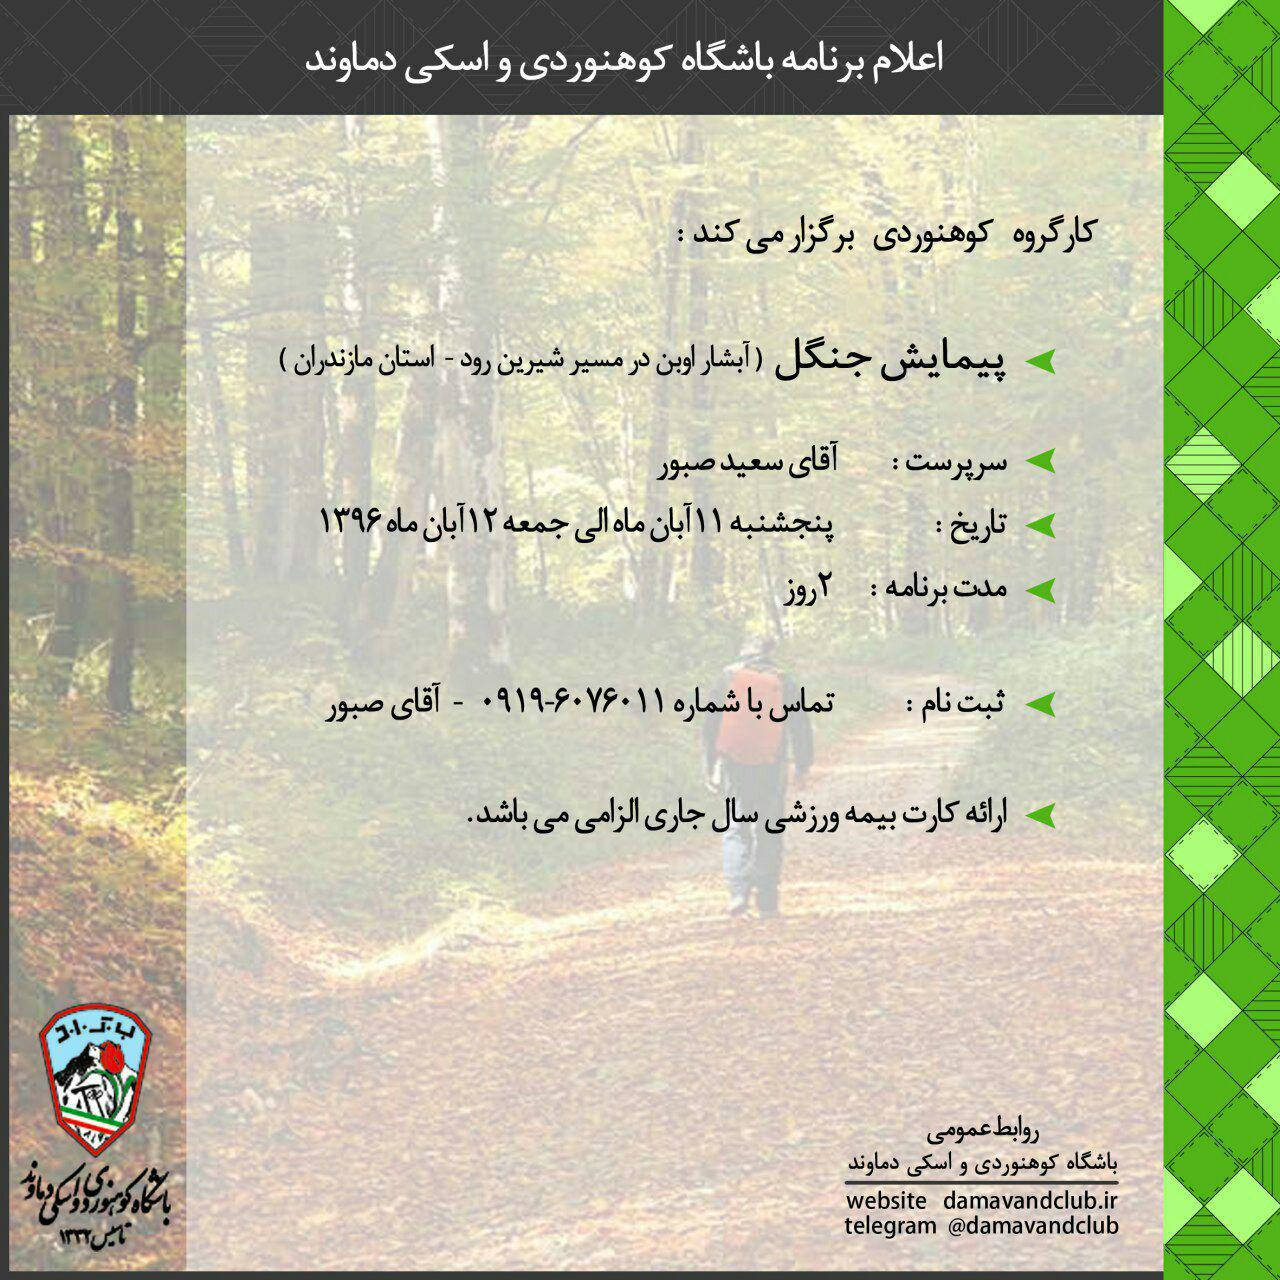 پیمایش جنگل ( آبشار اوبن در مسیر شیرین رود- استان مازندران) ۱۱ و ۱۲ آبان ۹۶